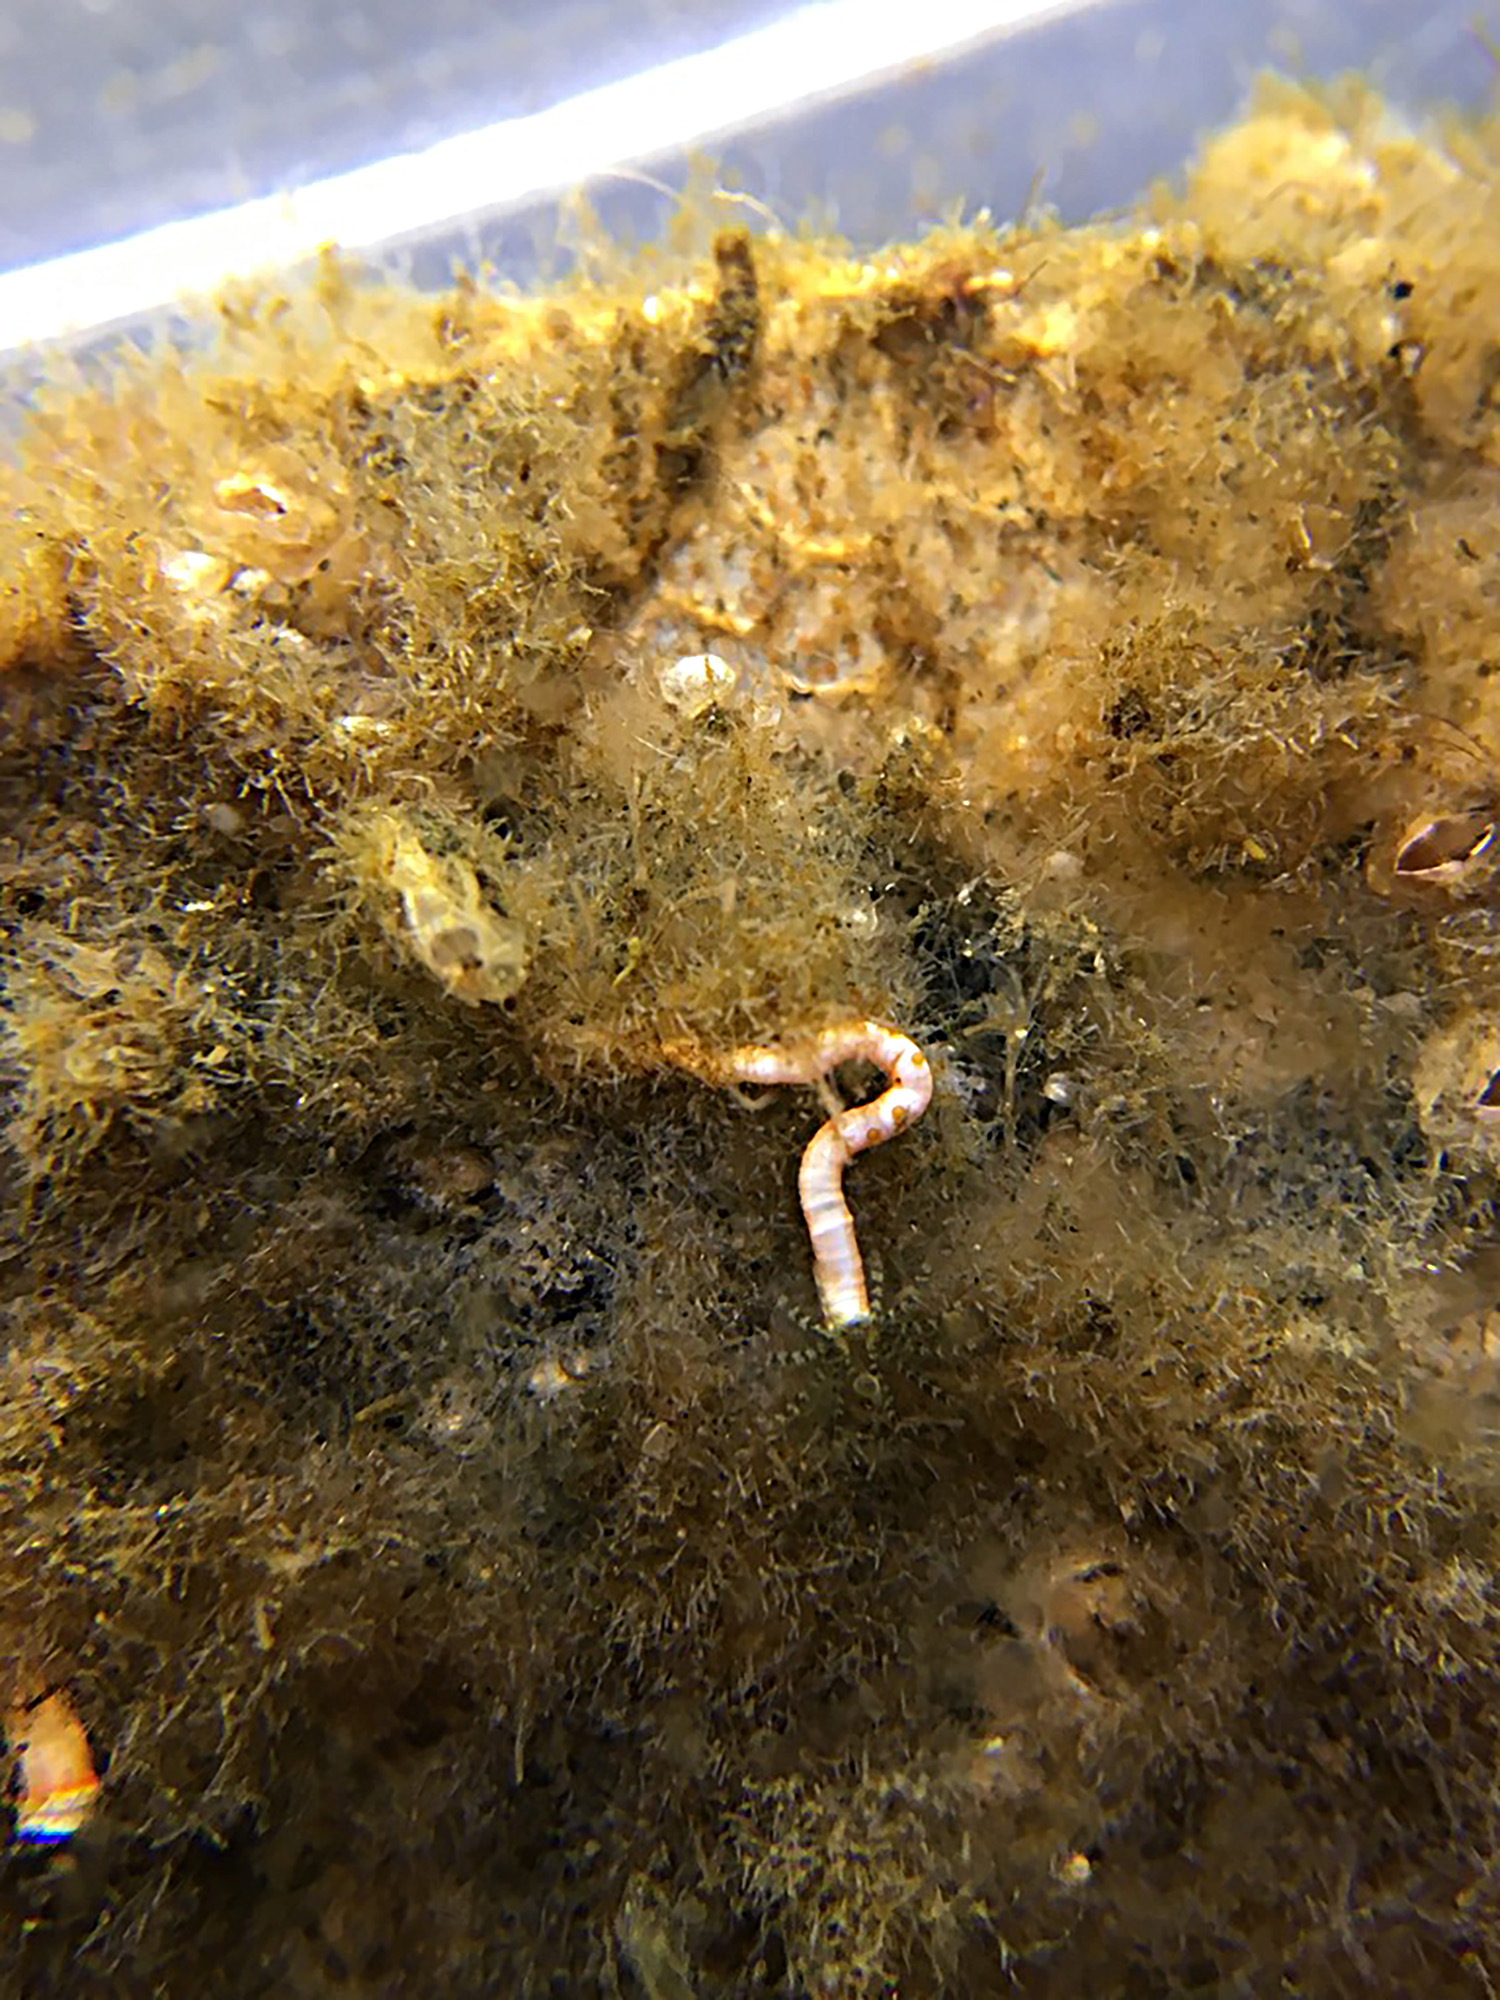 Limy tube worm